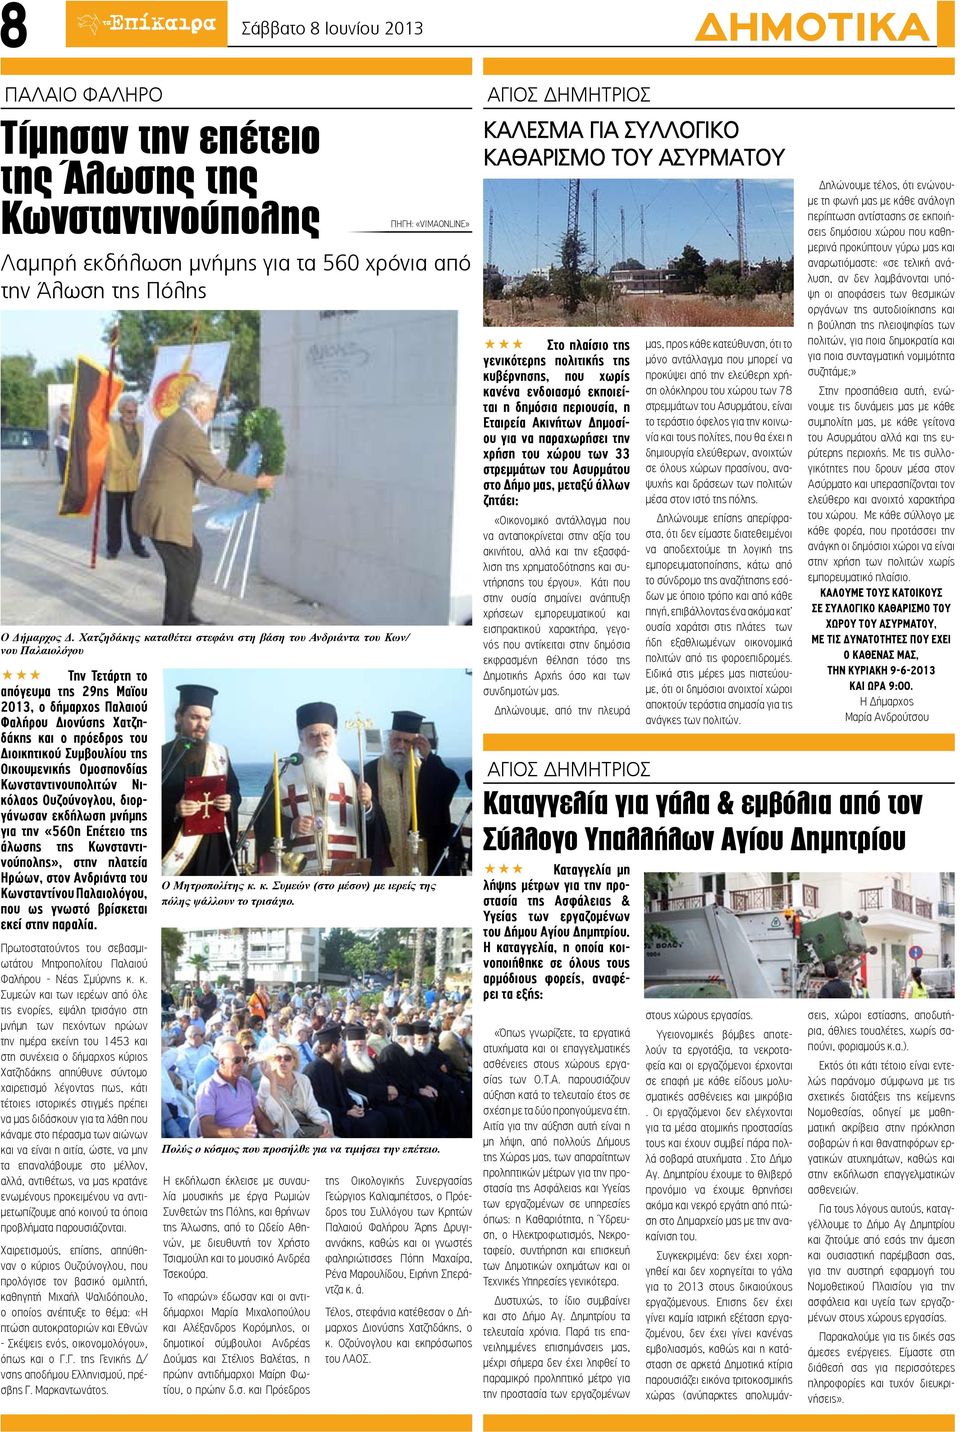 Οικουμενικής Ομοσπονδίας Κωνσταντινουπολιτών Νικόλαος Ουζούνογλου, διοργάνωσαν εκδήλωση μνήμης για την «560η Επέτειο της άλωσης της Κωνσταντινούπολης», στην πλατεία Ηρώων, στον Ανδριάντα Κωνσταντίνου